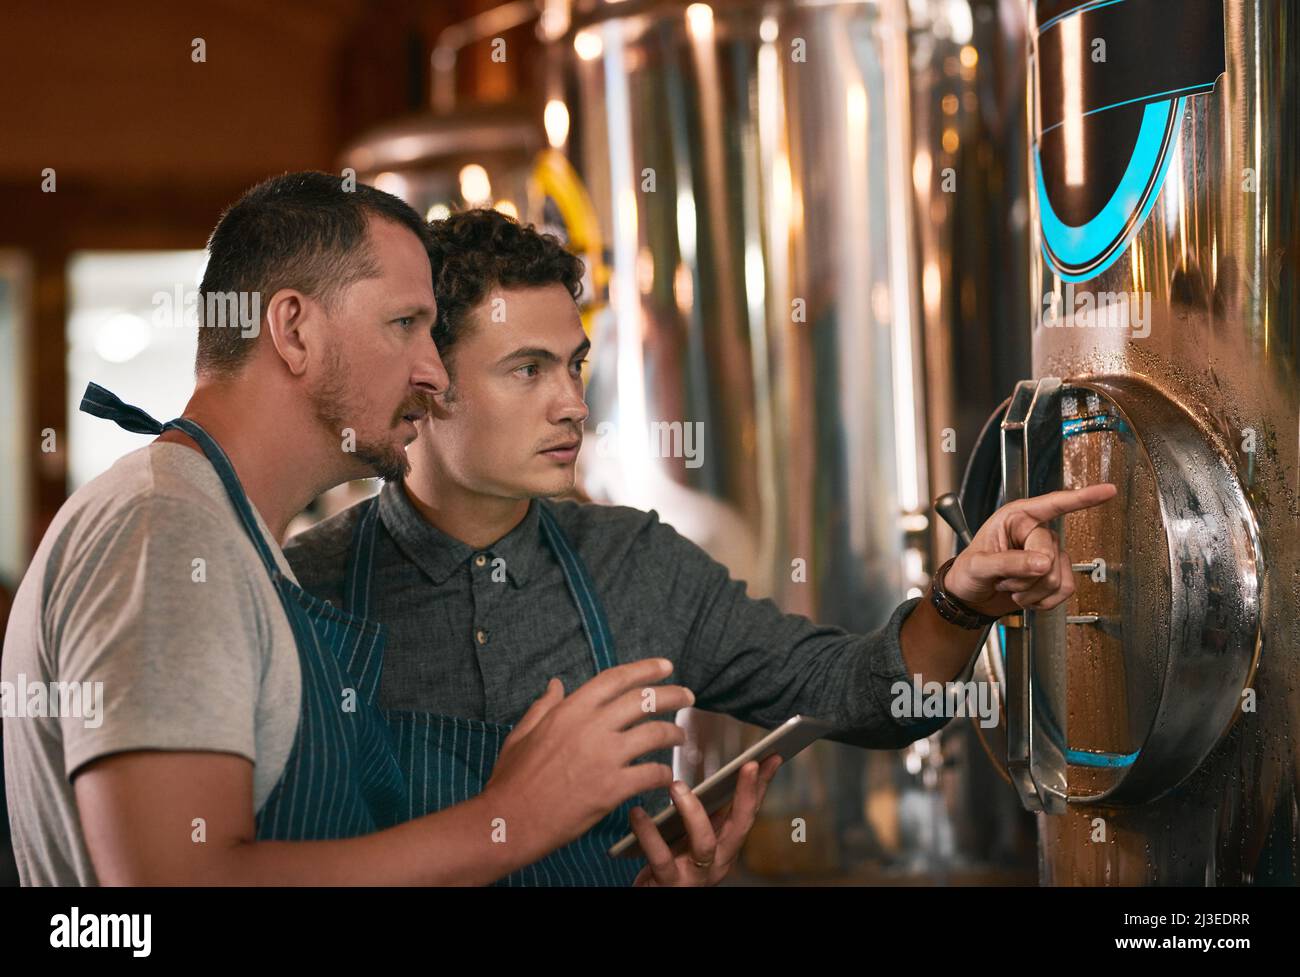 Ist dieser Behälter kalt genug? Aufnahme von zwei jungen Männern, die tagsüber ihre Biermaschine in einer Bierbrauerei inspizieren. Stockfoto